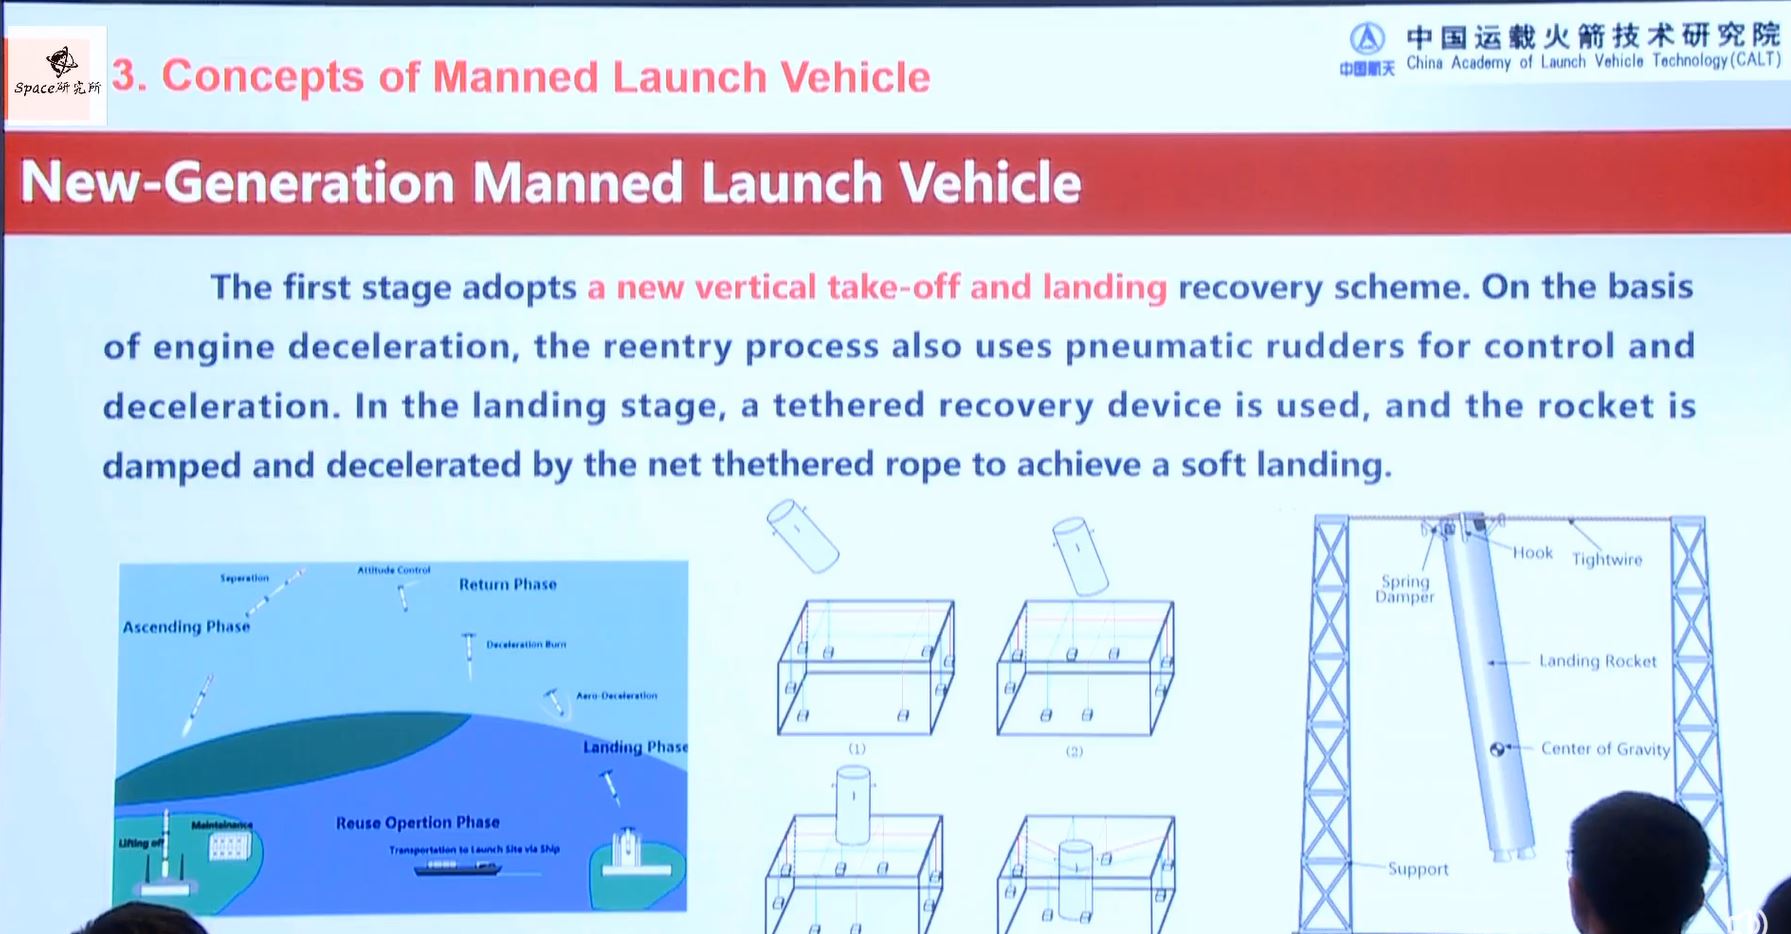 Ilustración del sistema de aterrizaje de un vehículo de lanzamiento tripulado de nueva generación en China.